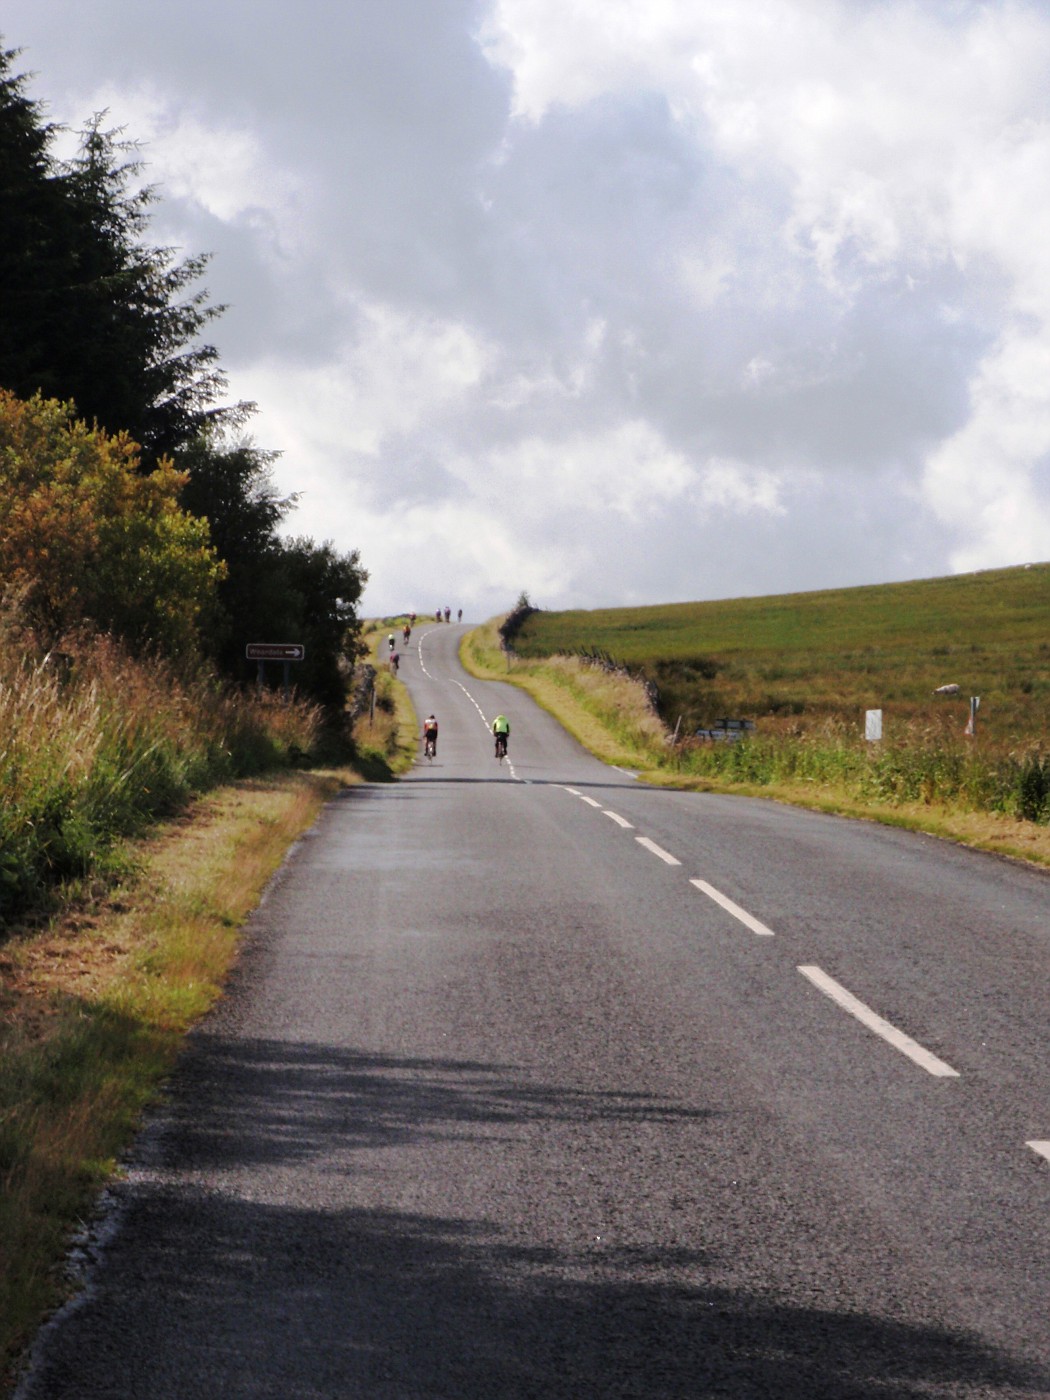 Road in Cumbria, England